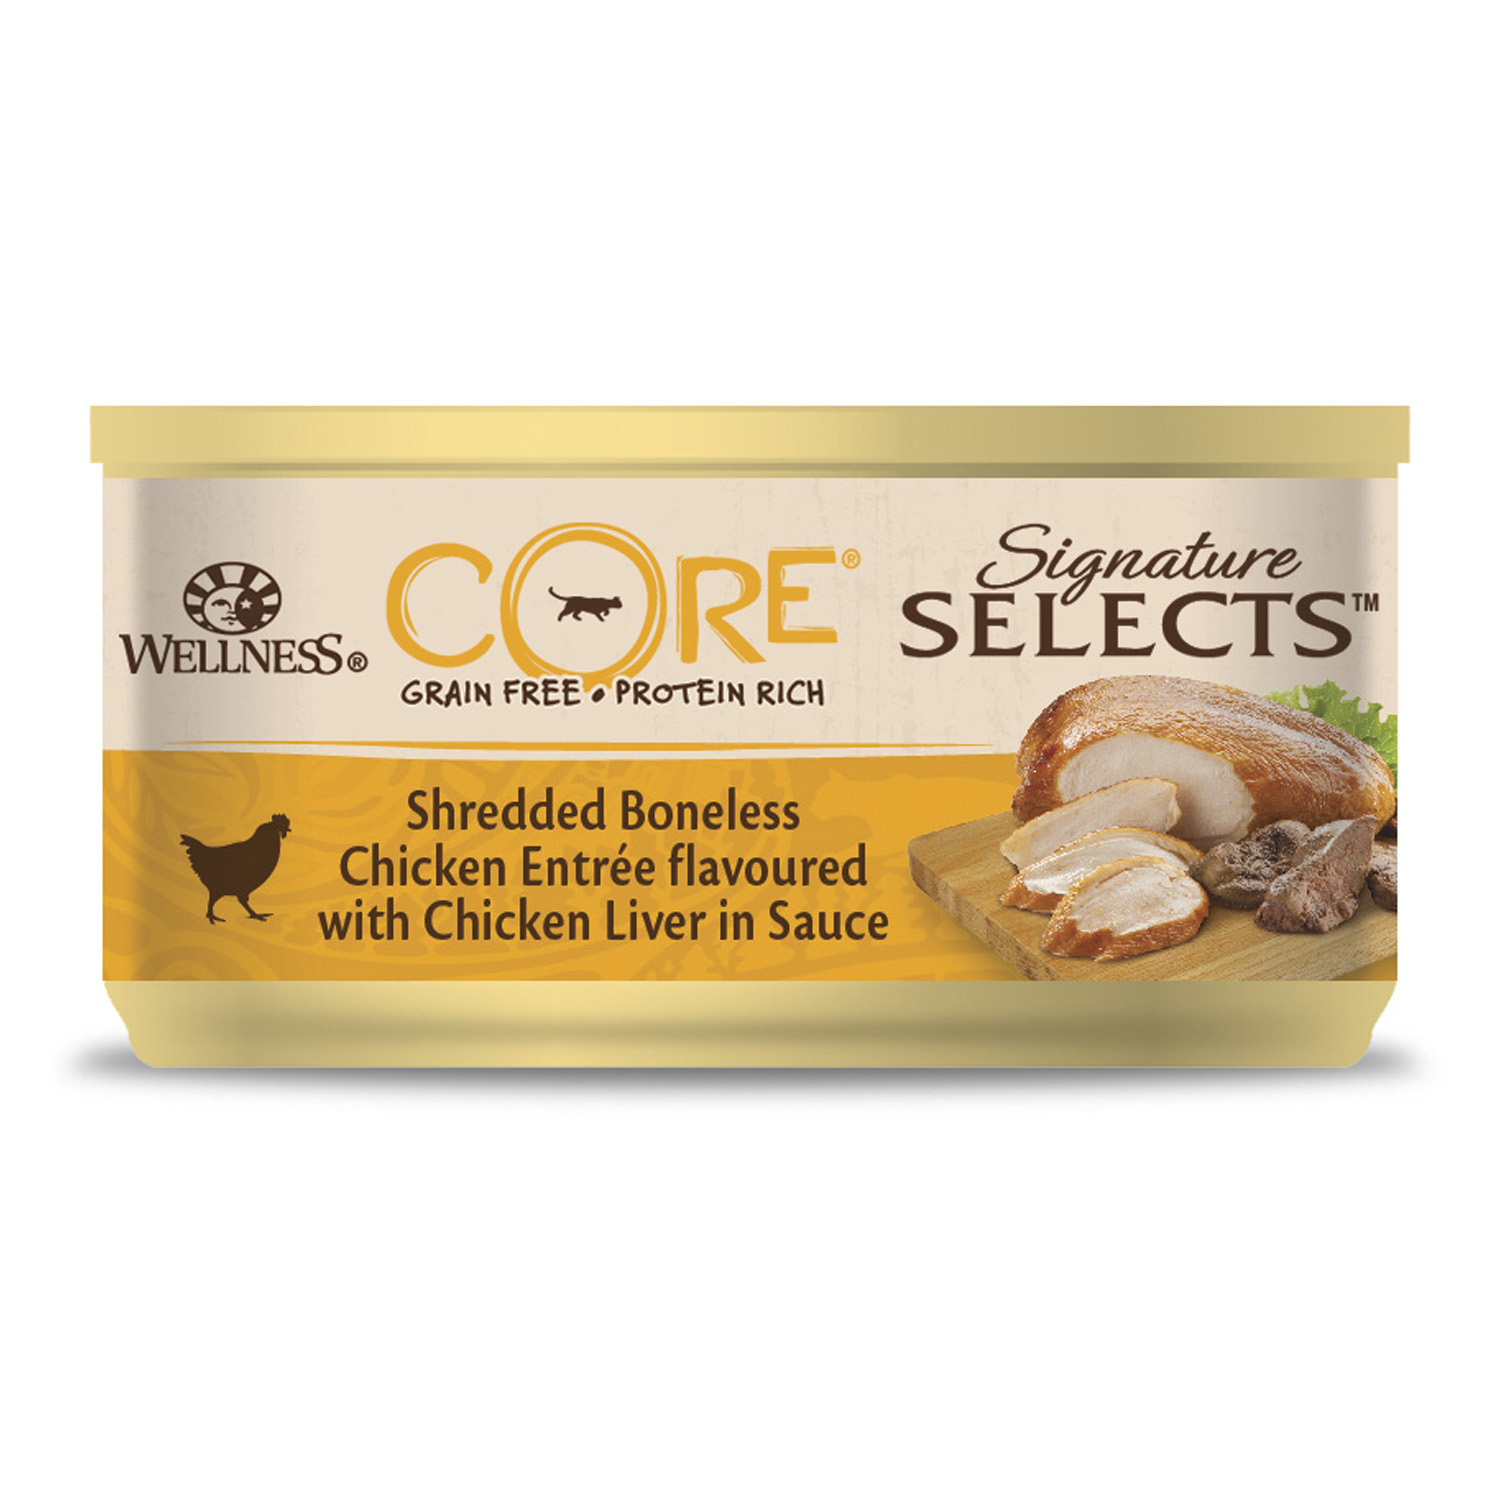 Wellness CORE Wellness CORE signature Selects консервы из курицы с куриной печенью в виде фарша в соусе для кошек (79 г)